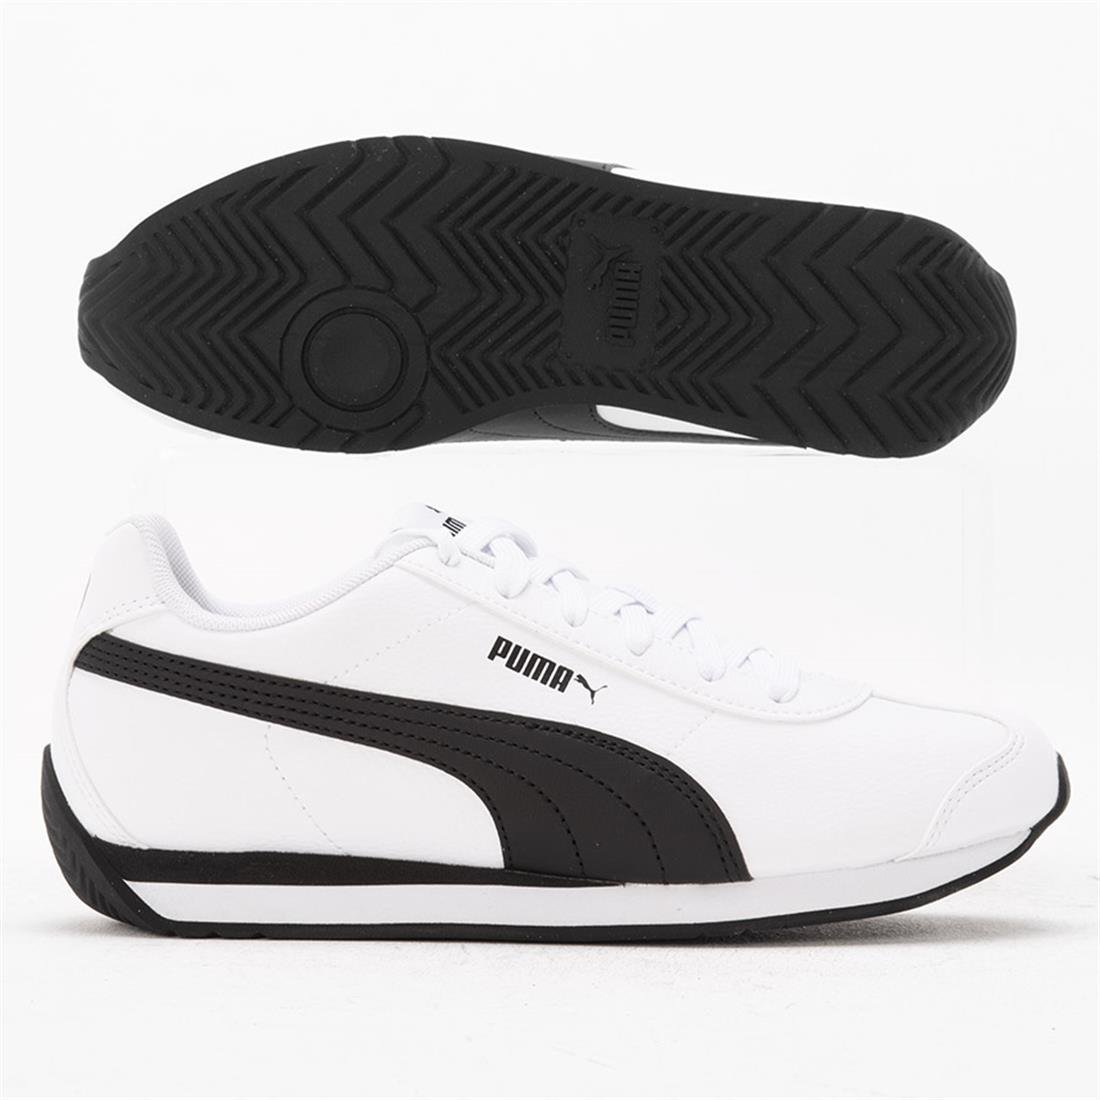 Puma Turin 3 Beyaz Spor Ayakkabı 383037-06